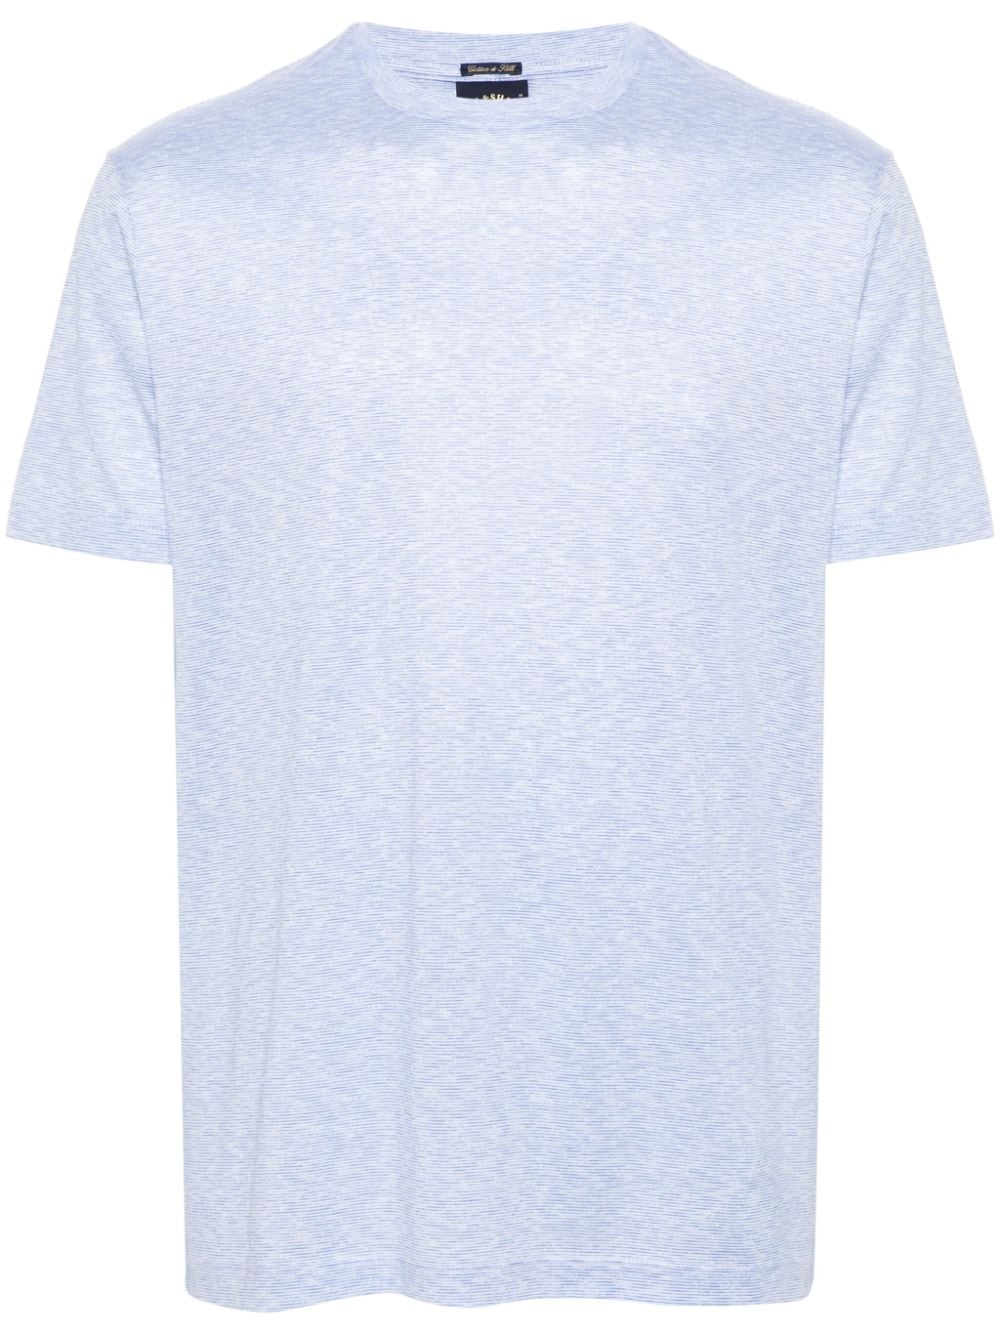 Paul & Shark striped cotton T-shirt - Blue